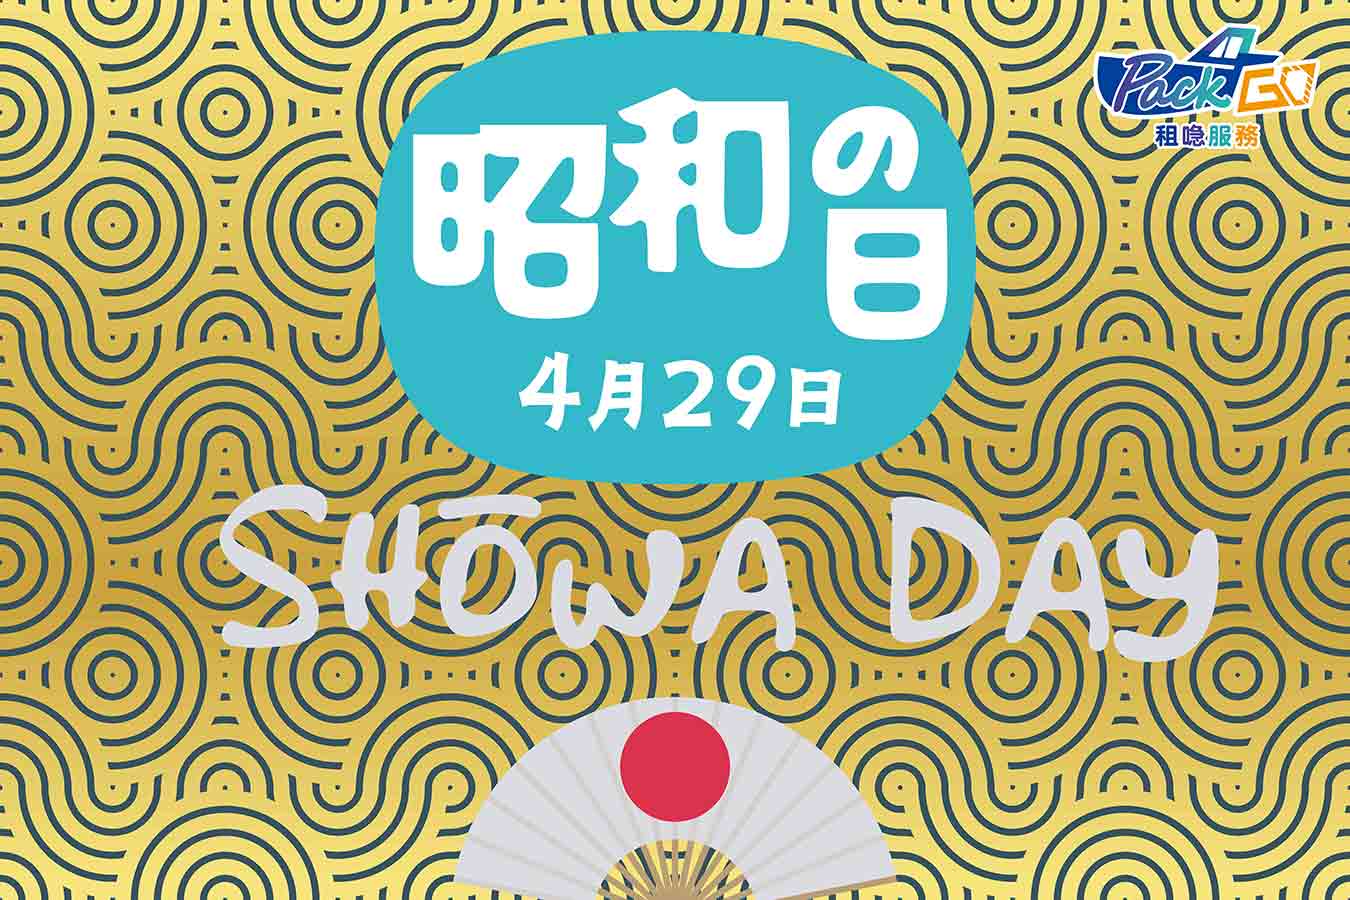 日本黃金週 昭和之日 showa day 暫停營業 注意事項